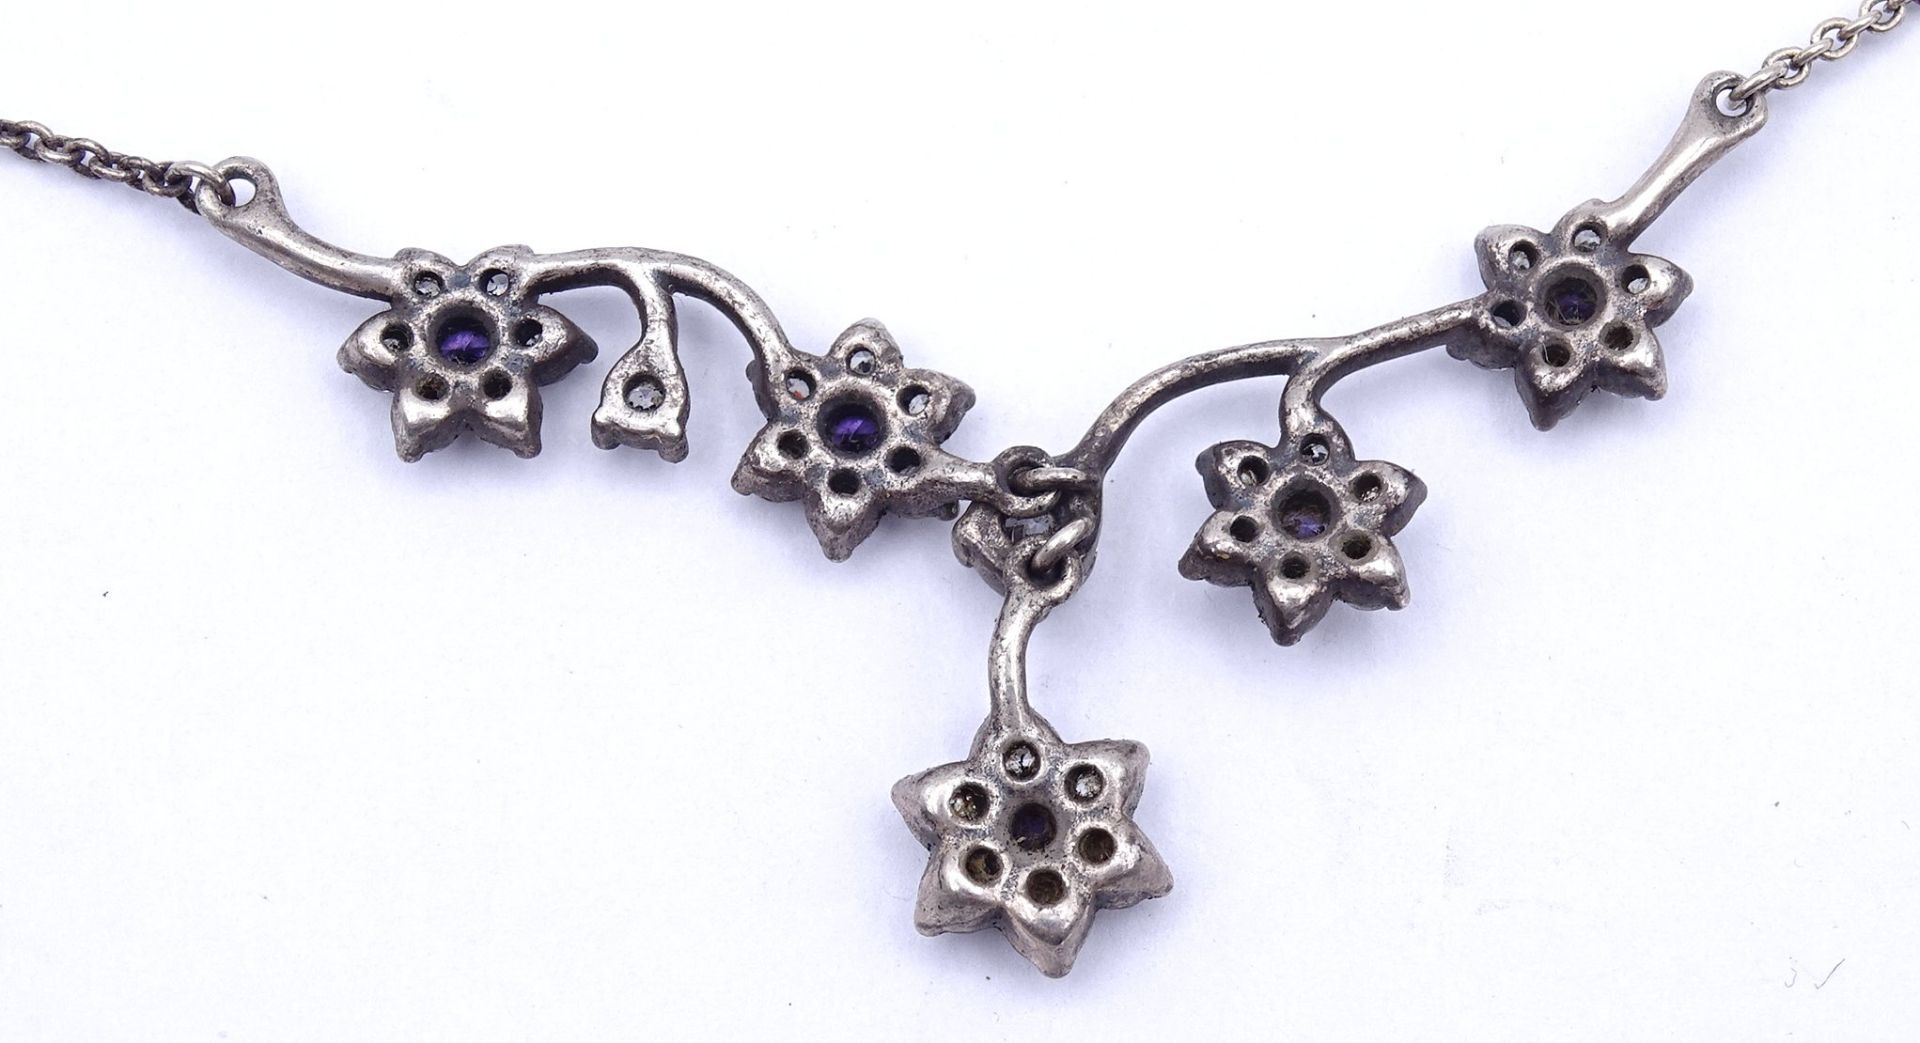 Halskette mit violetten und weißen Steinen, Silber 0.925,L. 44cm, 6,8g. - Bild 3 aus 3